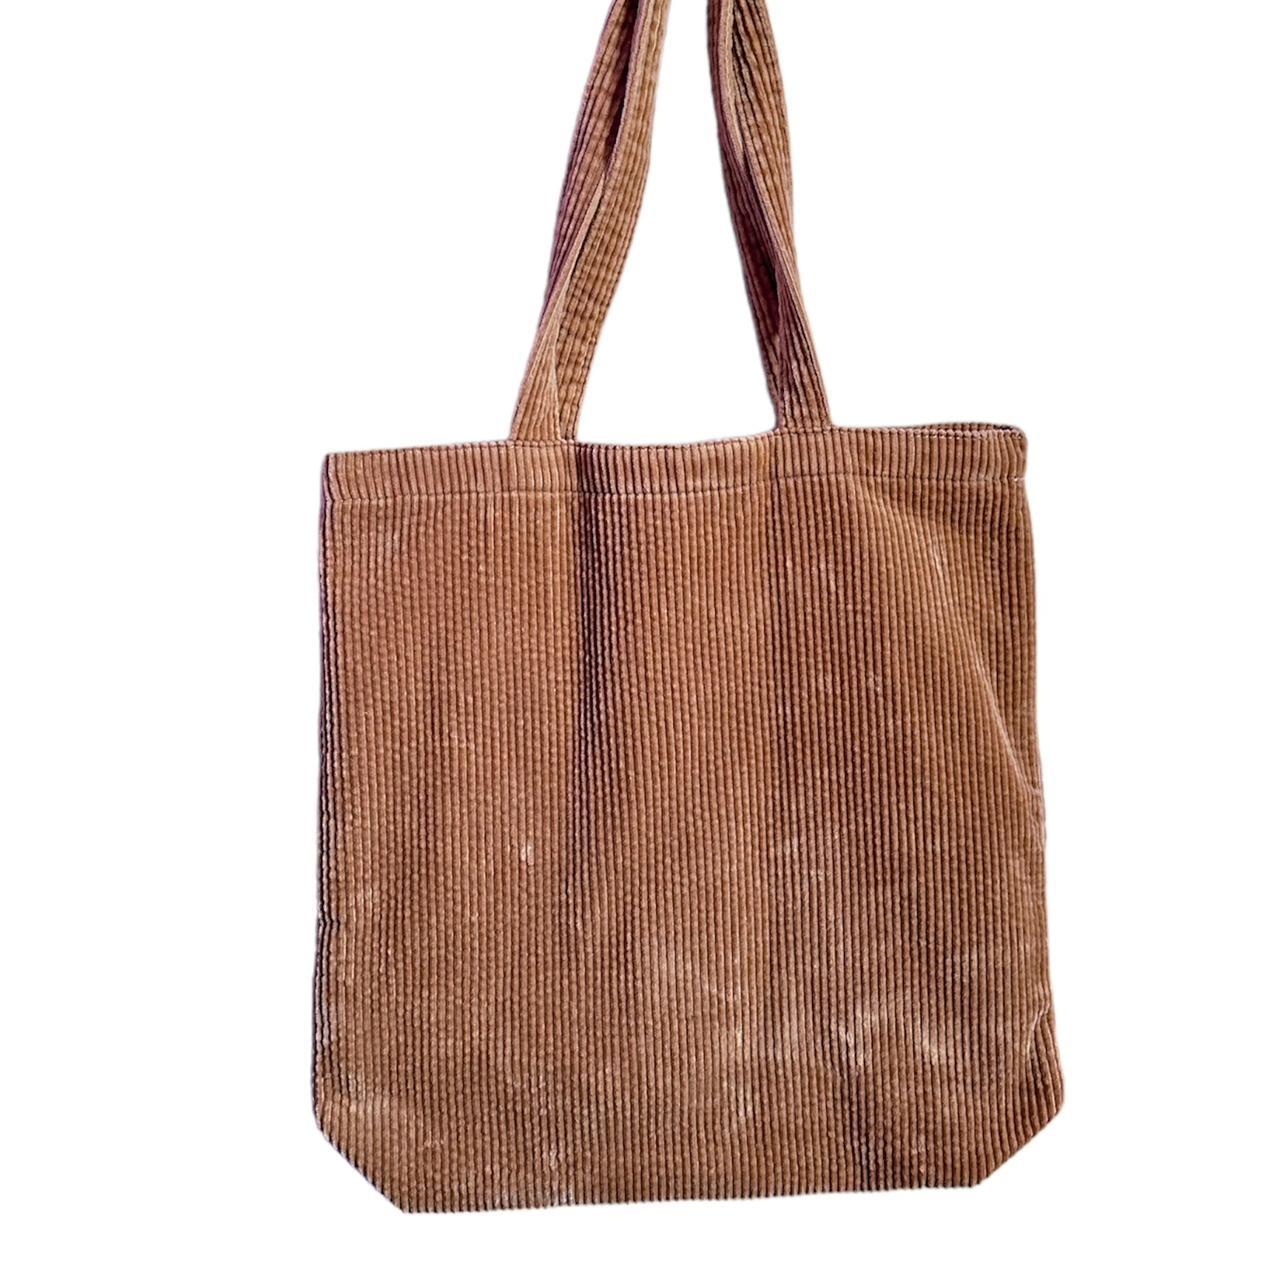 Madewell Women's Tan and Brown Bag (2)